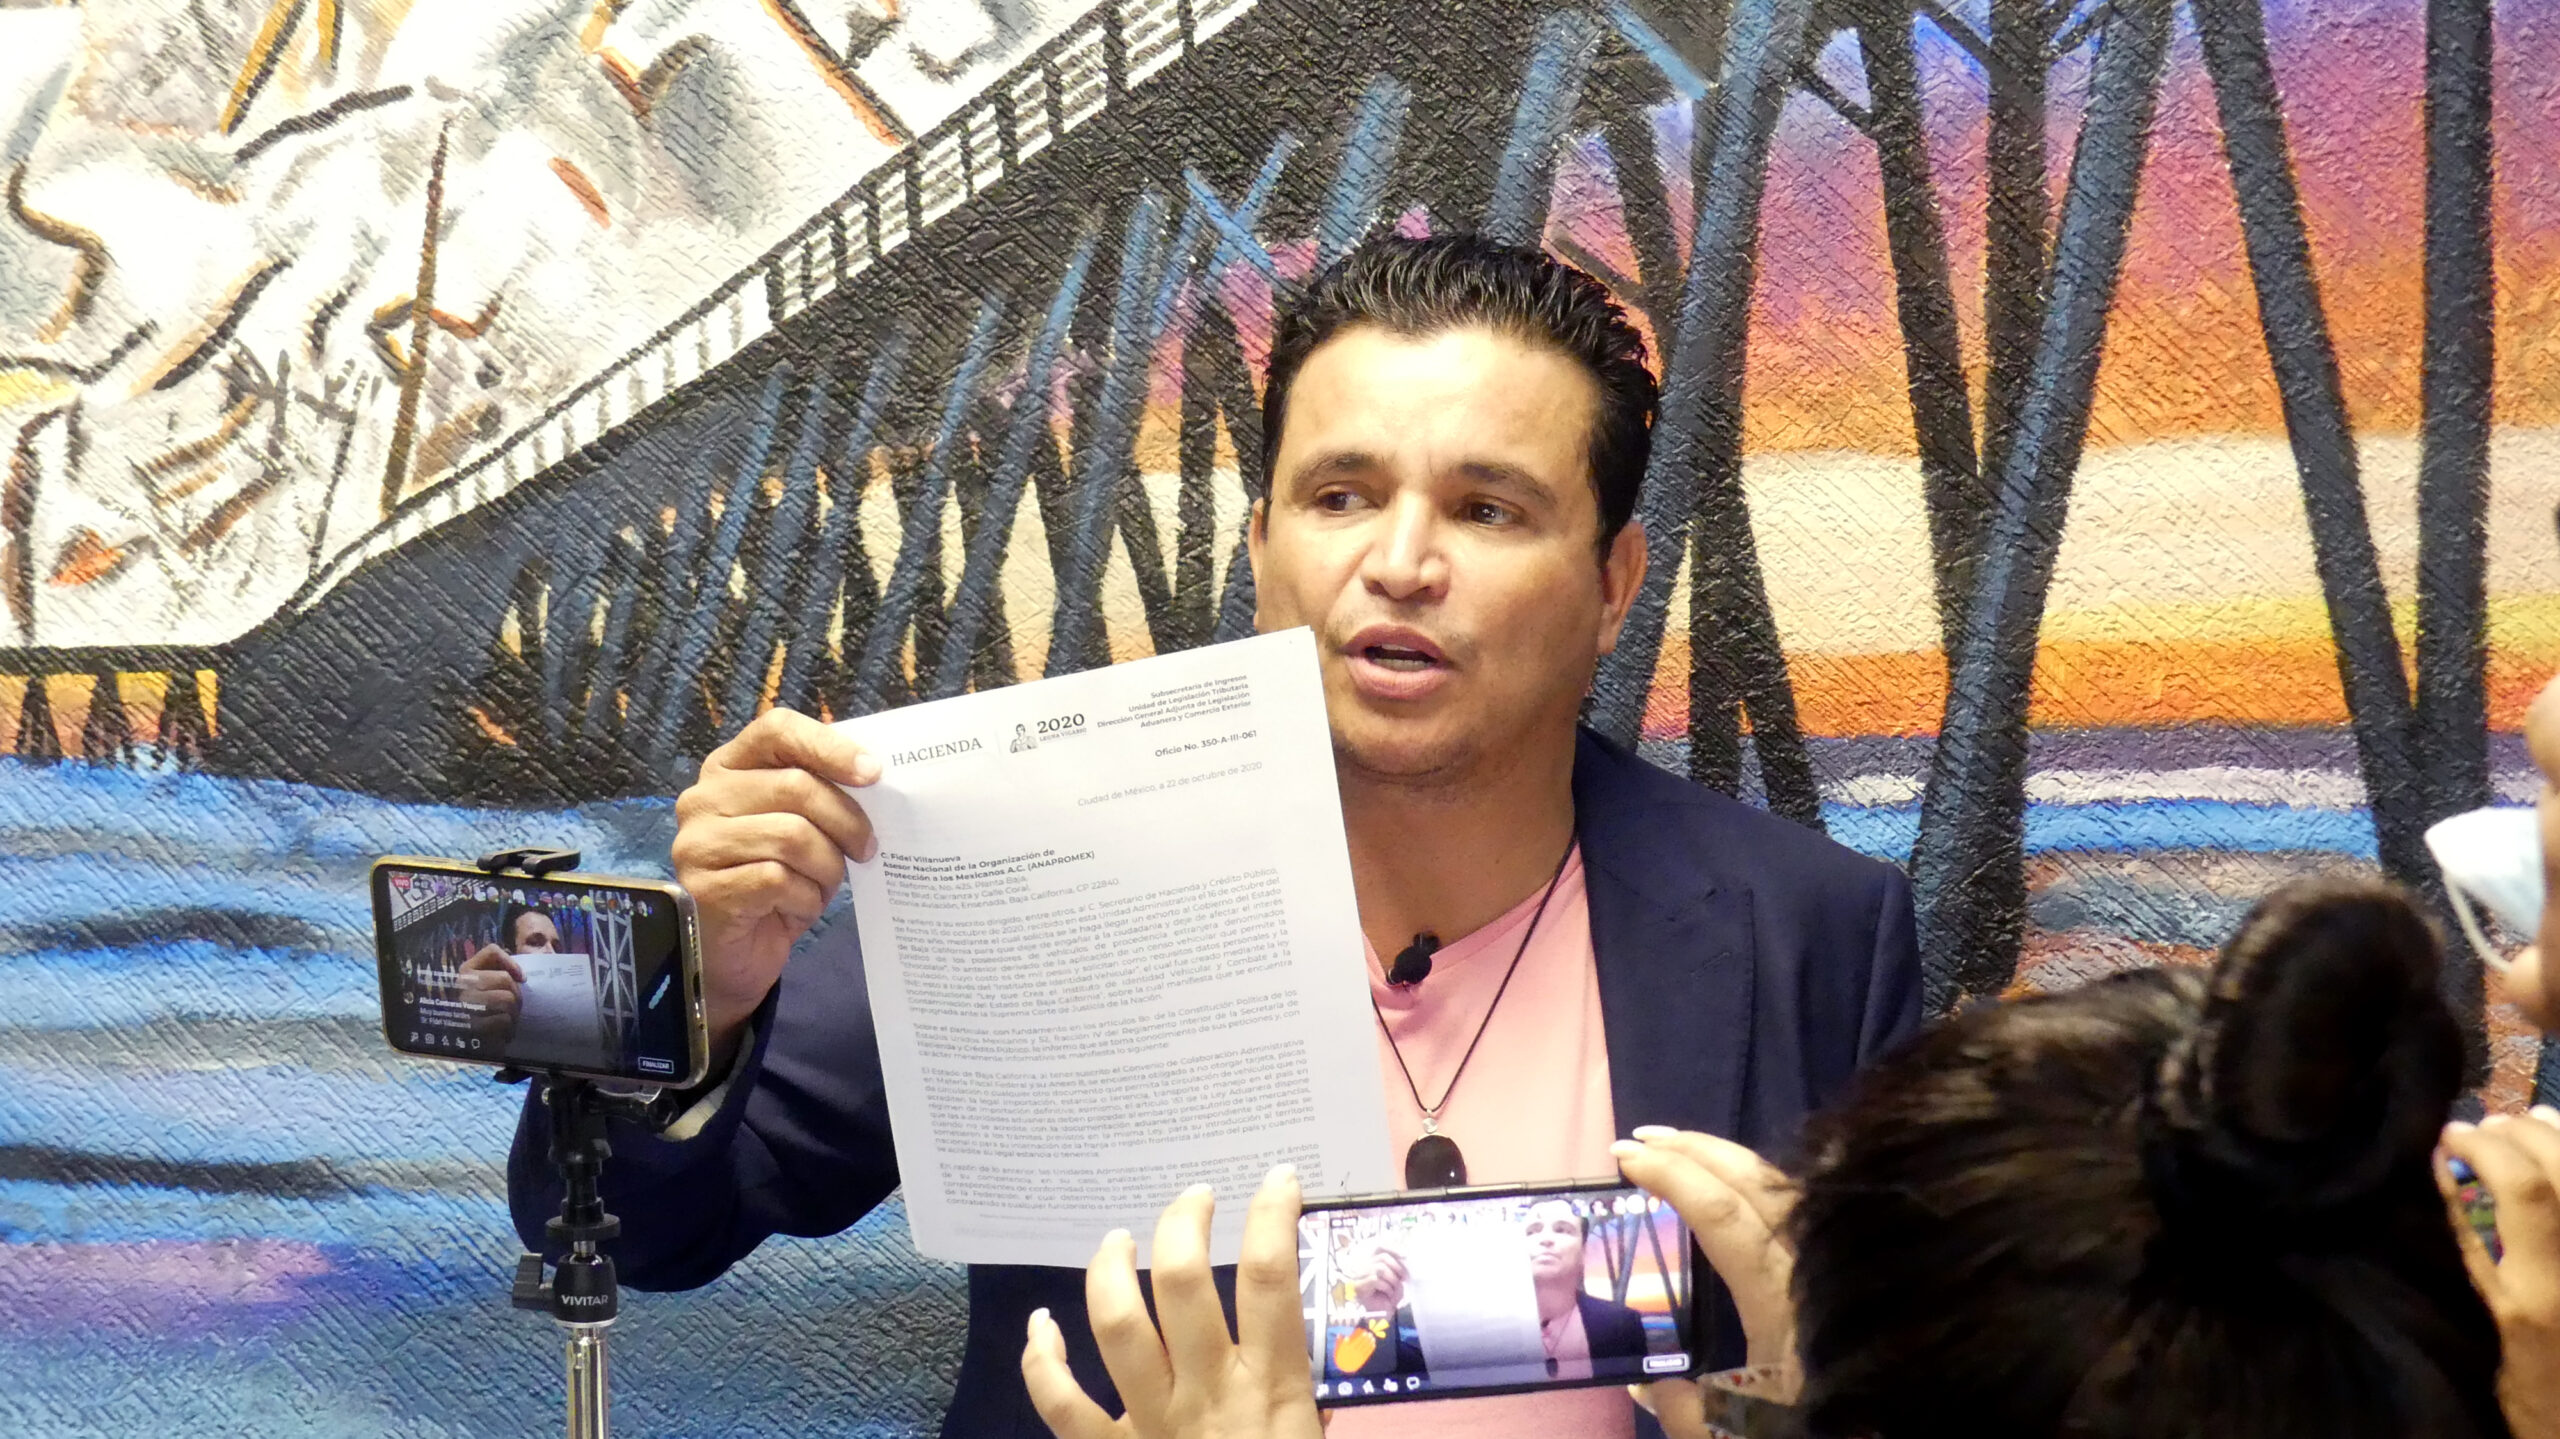 Confirma la SHCP que es ilegal el padrón de Bonilla de automóviles irregulares: Fidel Villanueva Ramírez